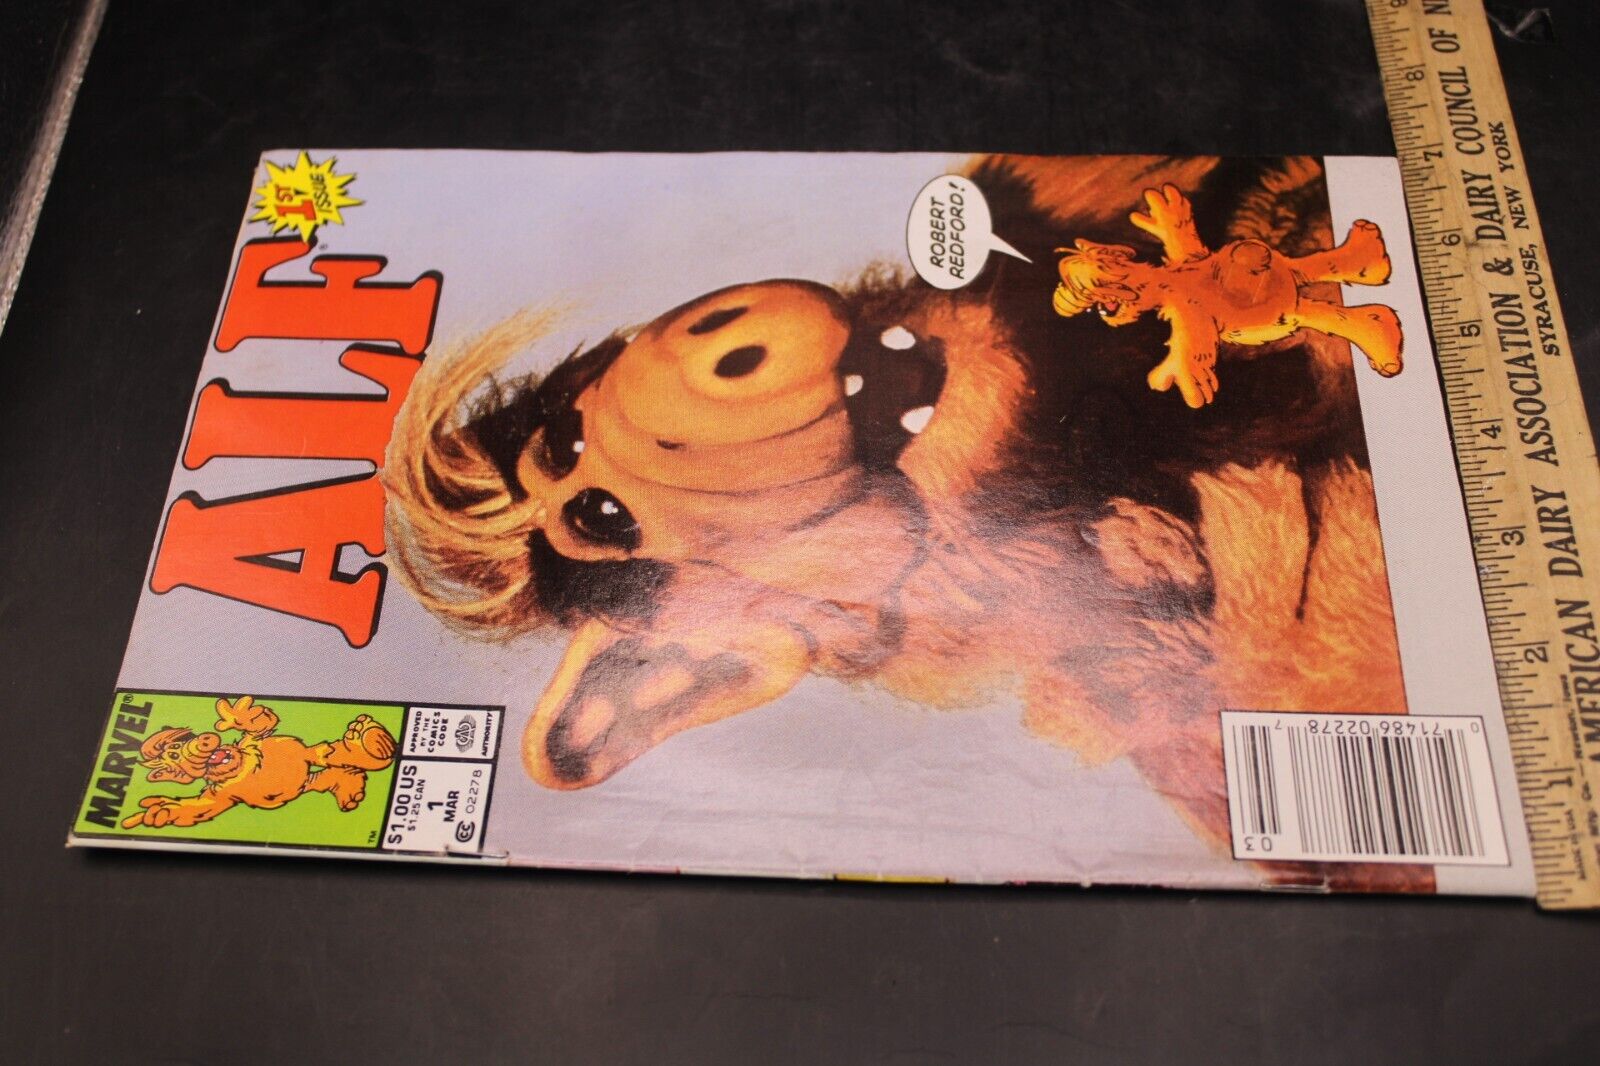 Alf #1 -Marvel Comics - 1st Appearance of Alf  in a Comic via NBC TV 1988 F9A